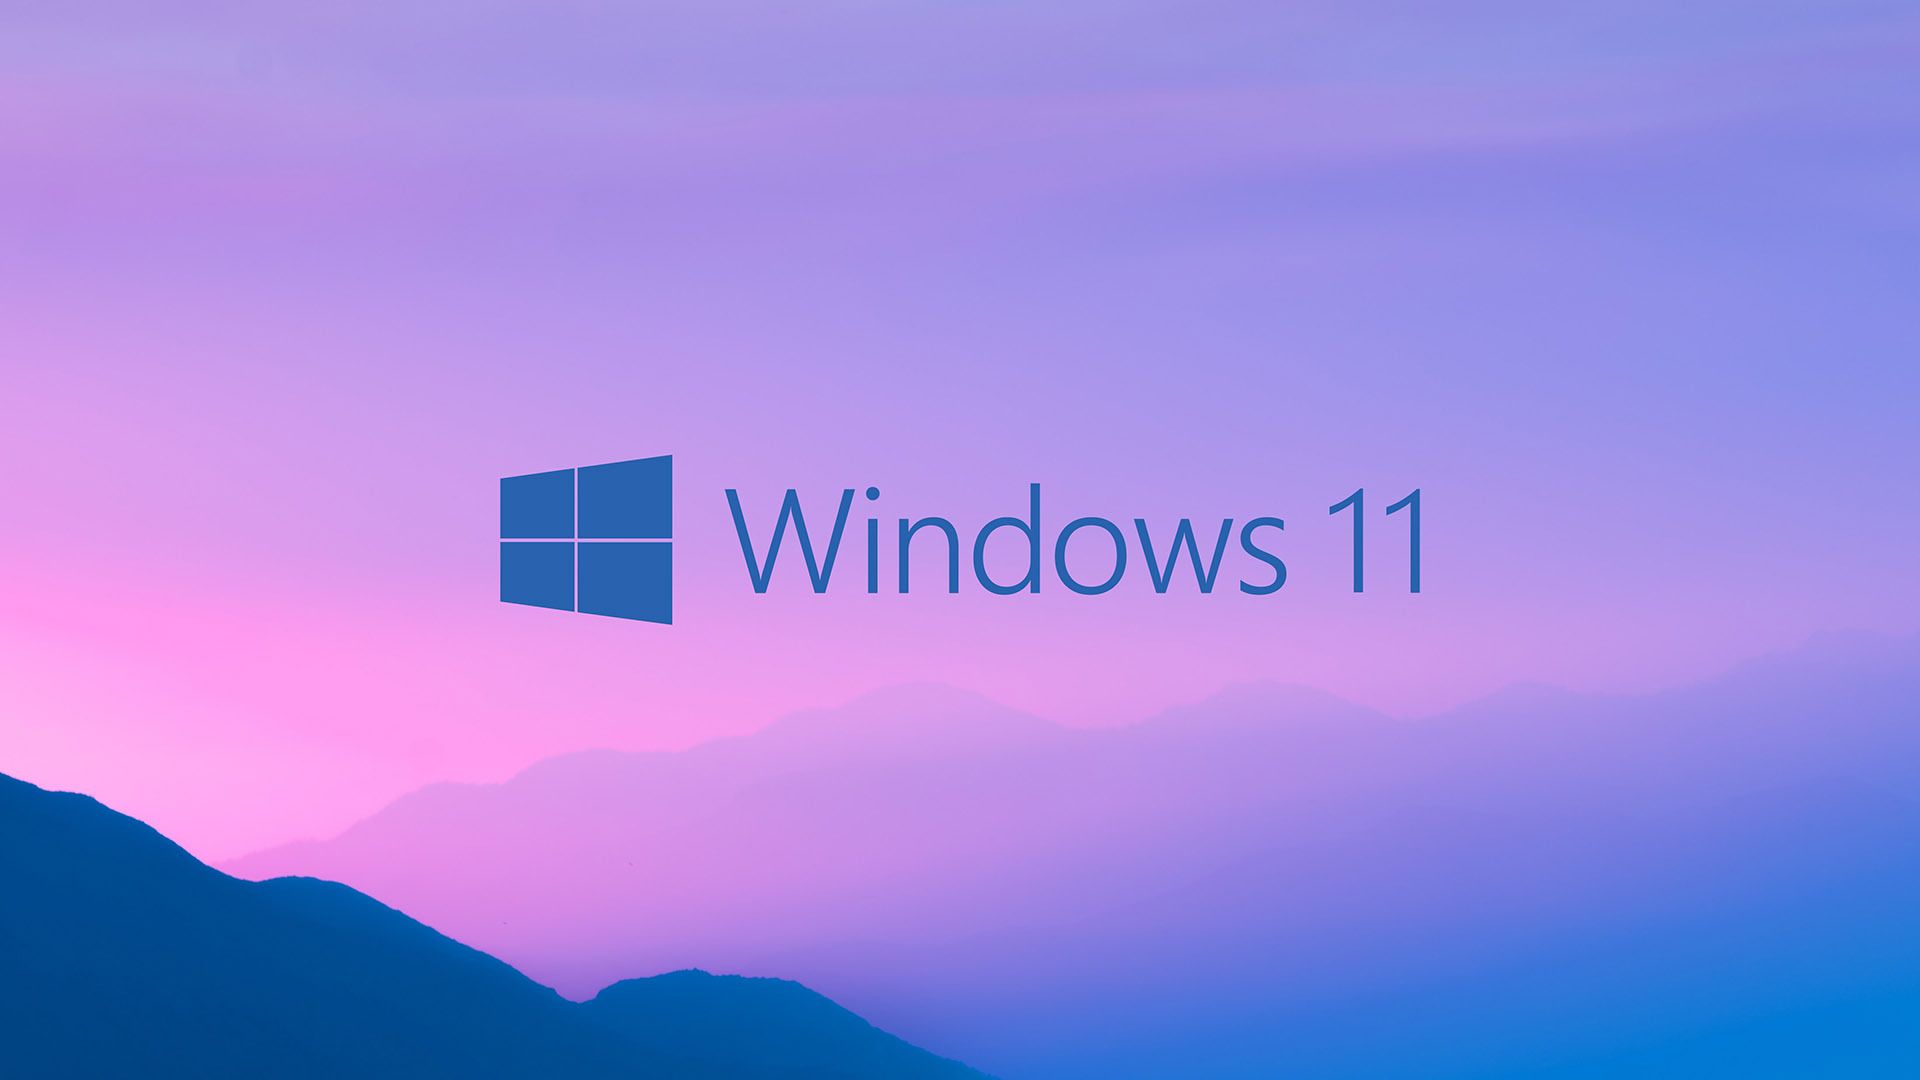 Утечка Windows 11 показала новый пользовательский интерфейс, меню «Пуск» и многое другое